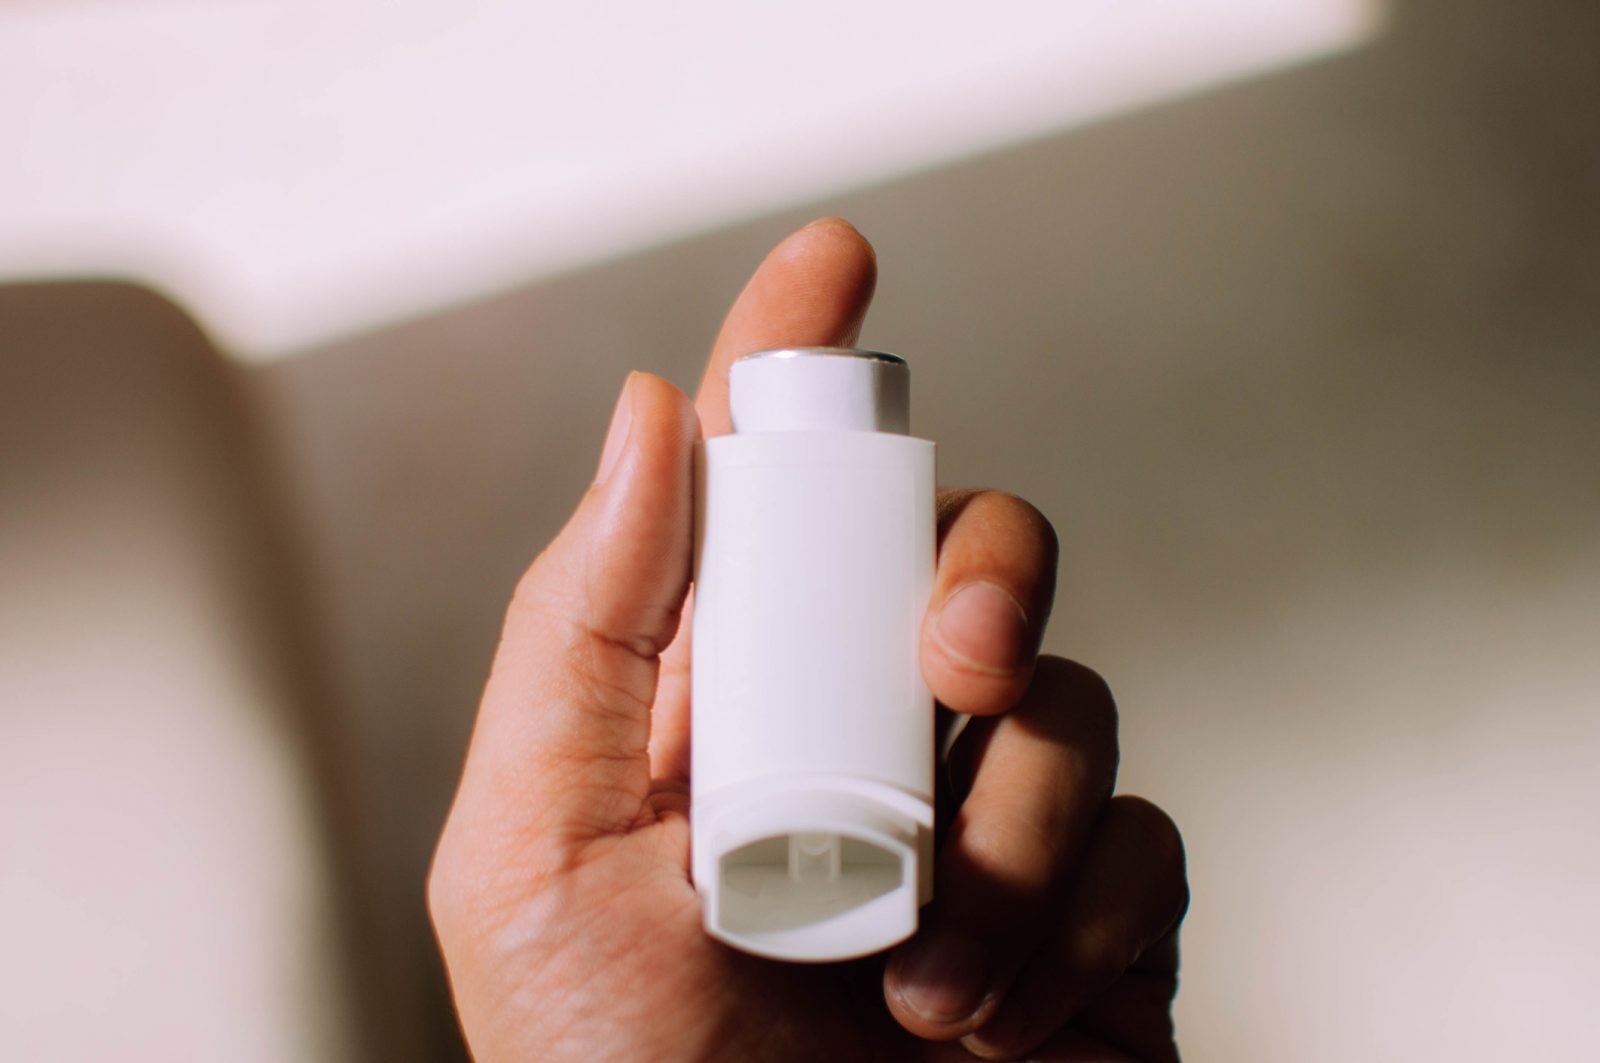 Astma to poważny problem w skali globalnej, ale może warto zmienić podejście do tej choroby
